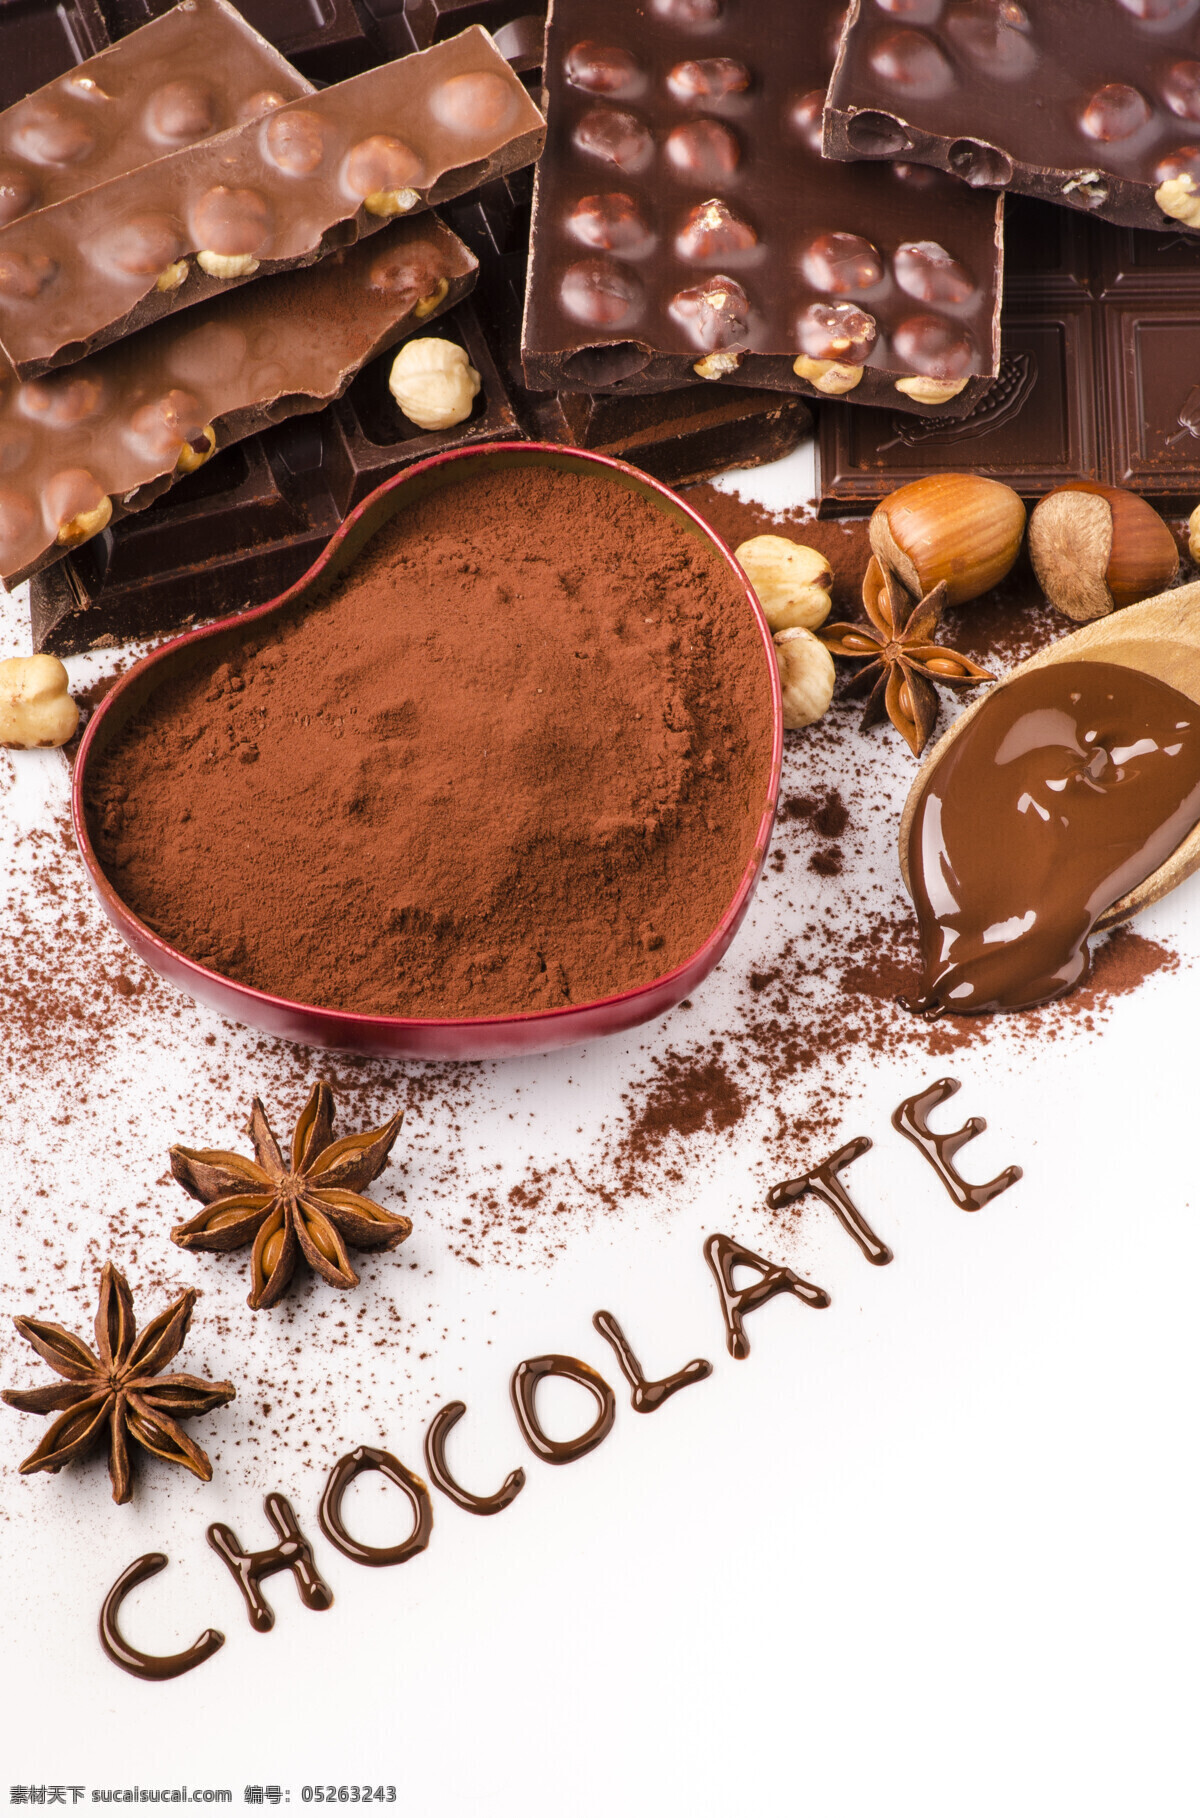 巧克力 巧克力果 巧克力球 各种巧克力球 香浓巧克力 热巧克力 巧克力元素 好吃的巧克力 热可可 香浓 巧克力广告 高热量 餐饮美食 西餐美食